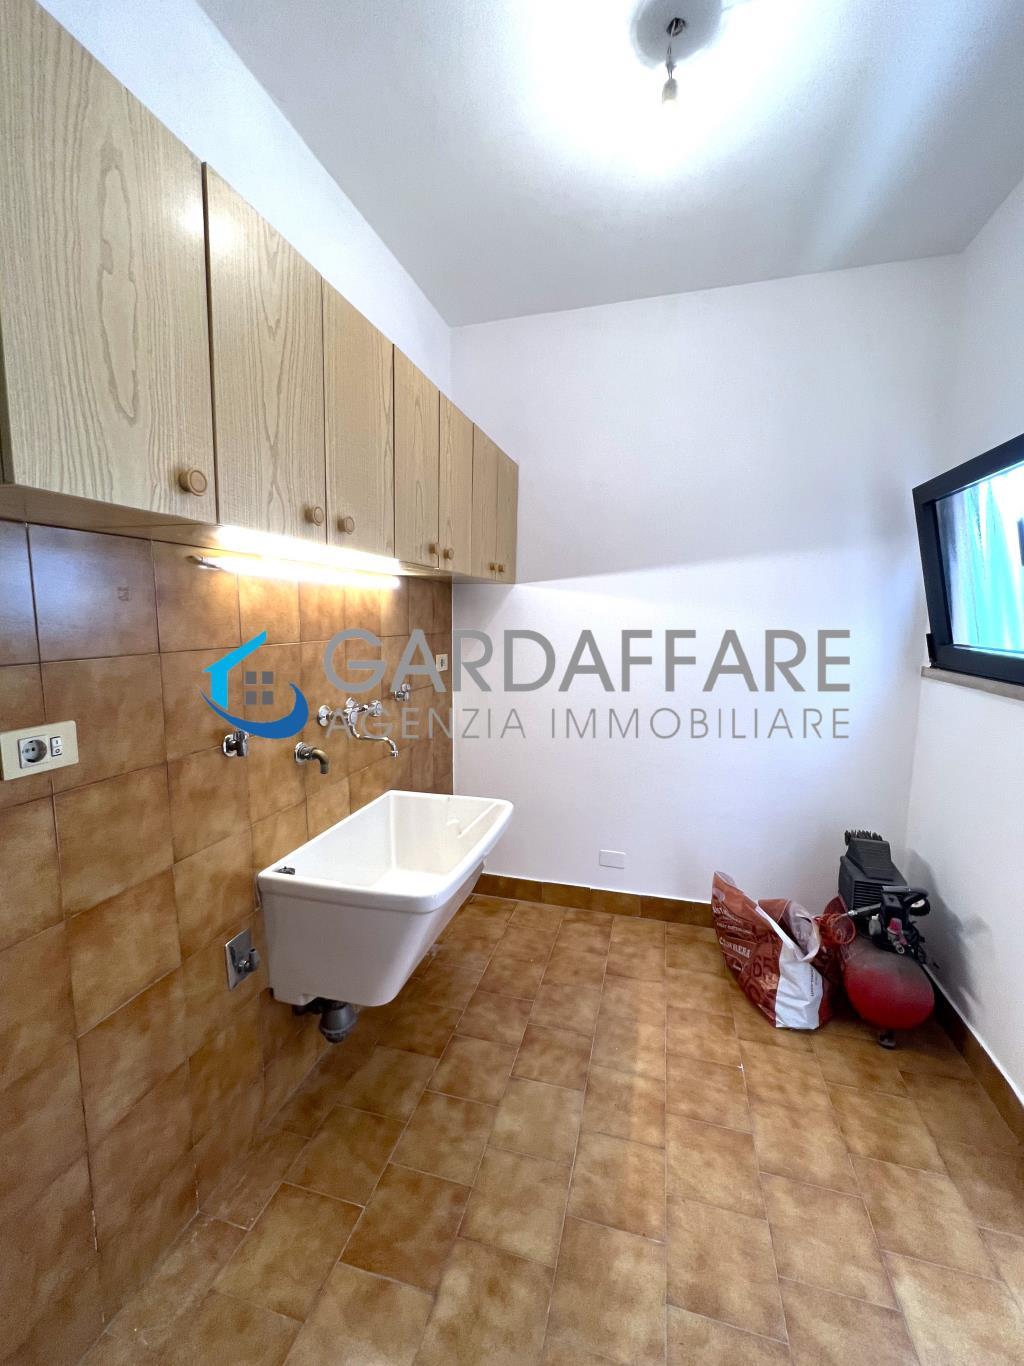 Einfamilienhaus zum Verkauf in Manerba del Garda - Cod. 22-10